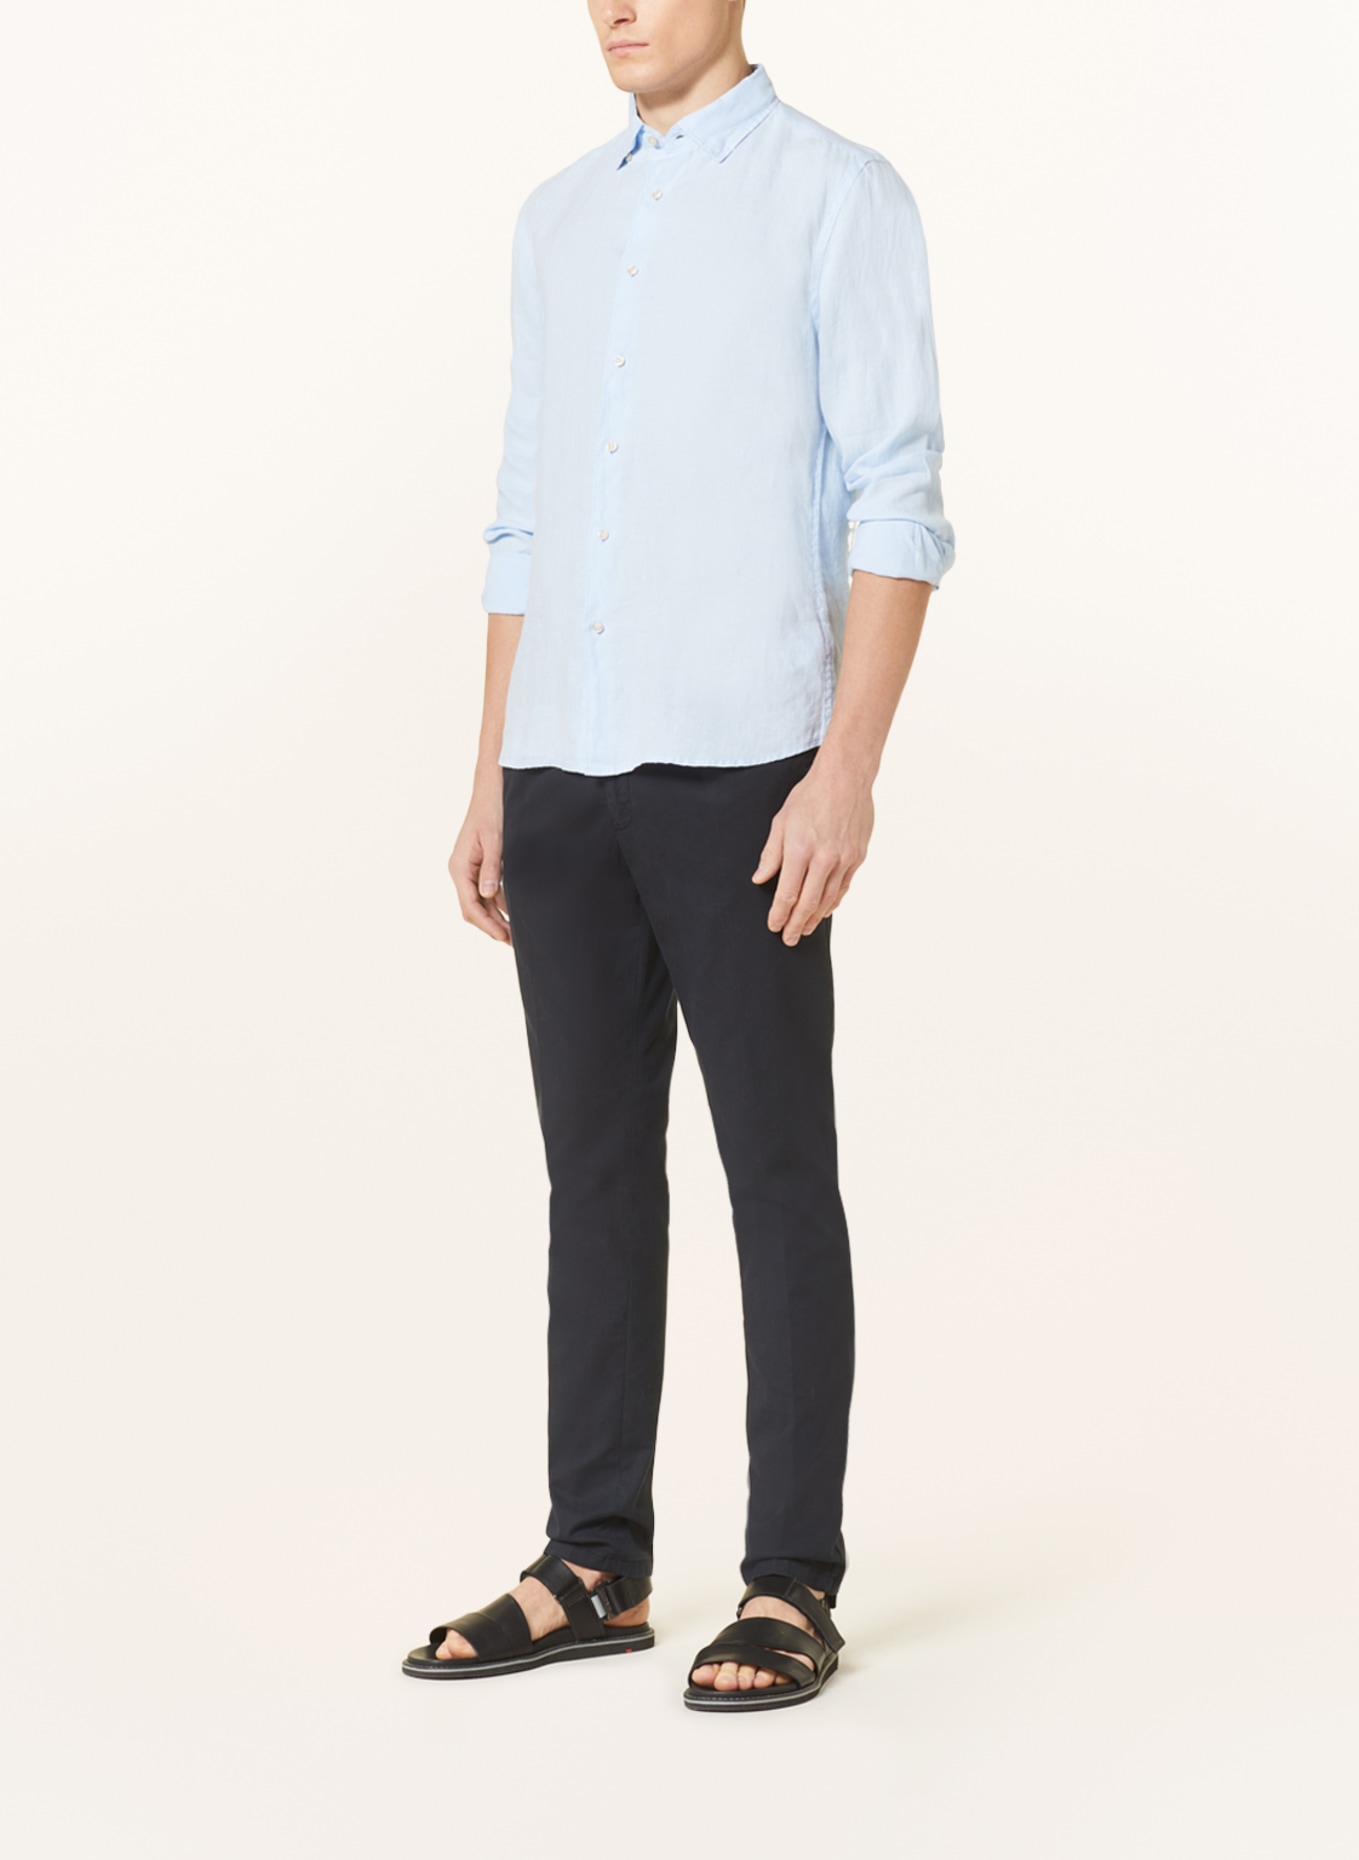 CINQUE Linen shirt CISTEVE slim Fit, Color: LIGHT BLUE (Image 2)